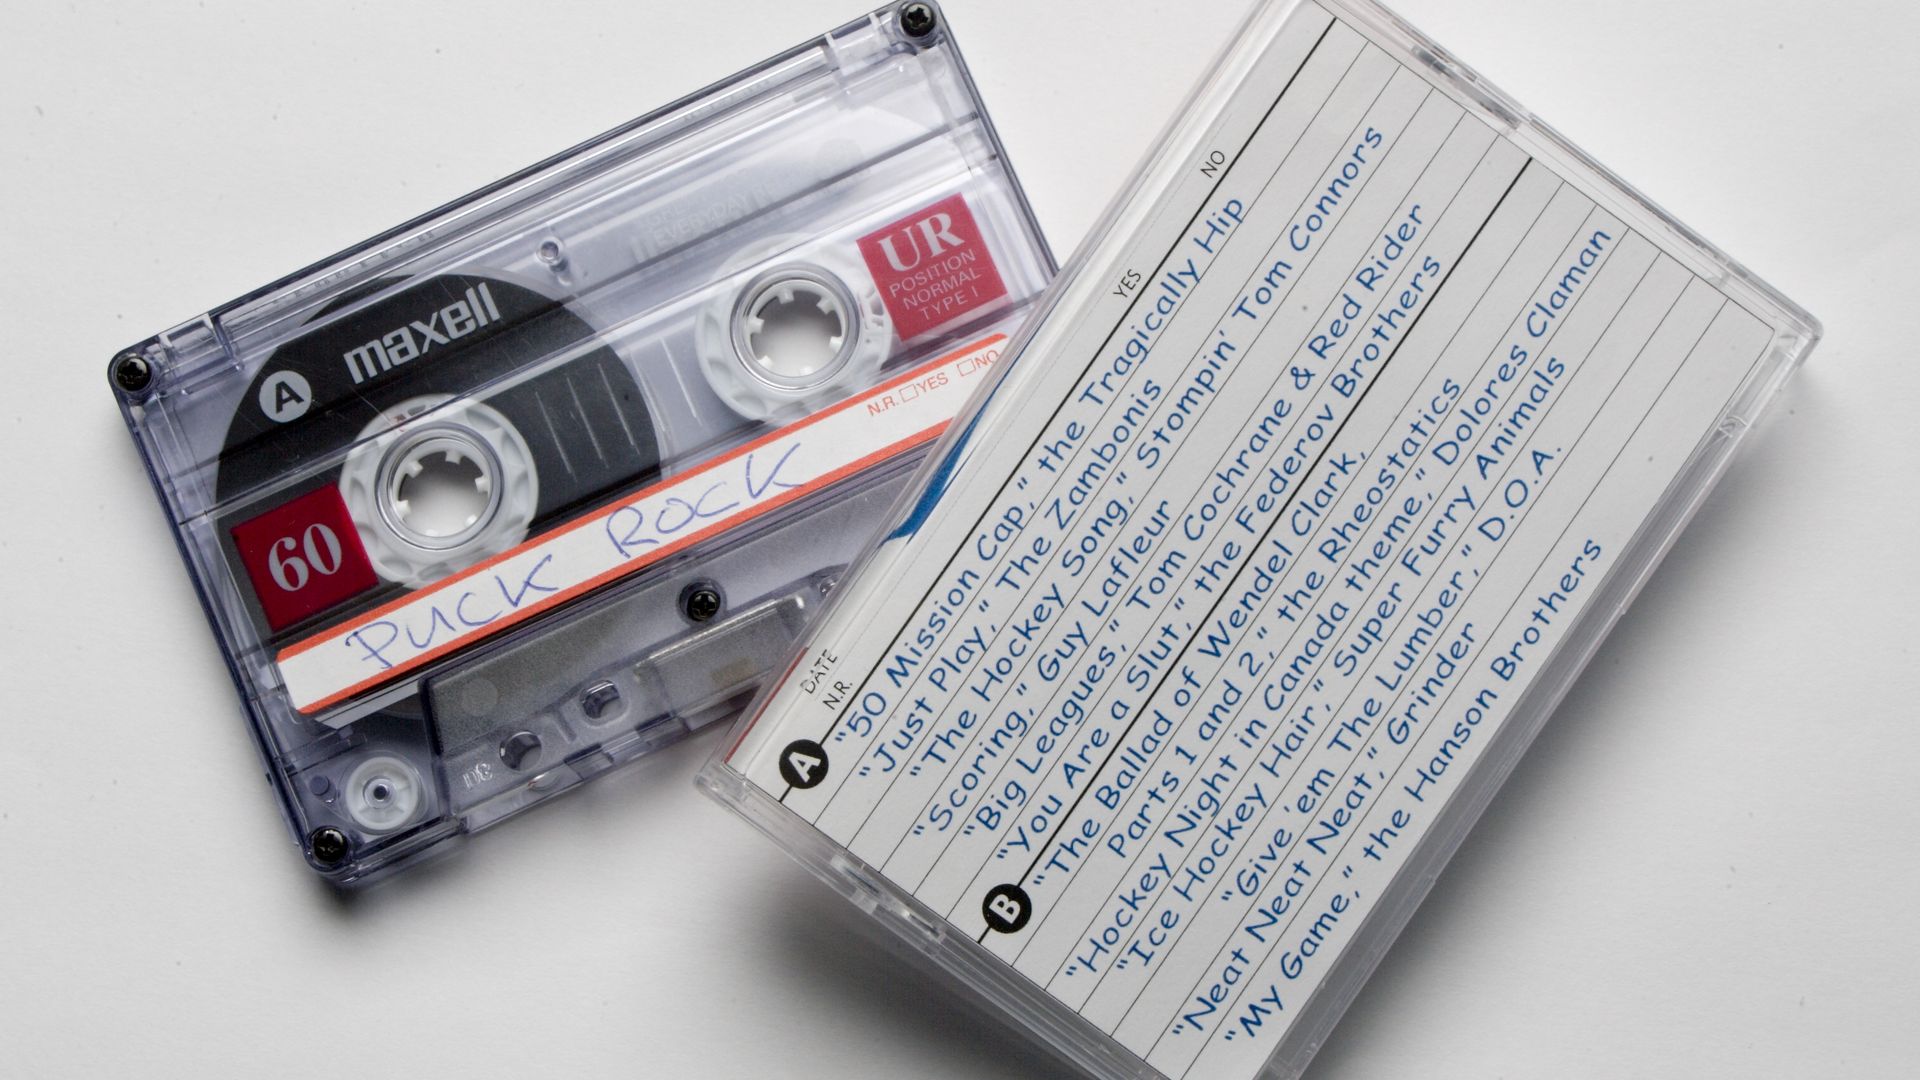 An audio cassette tape alongside its case